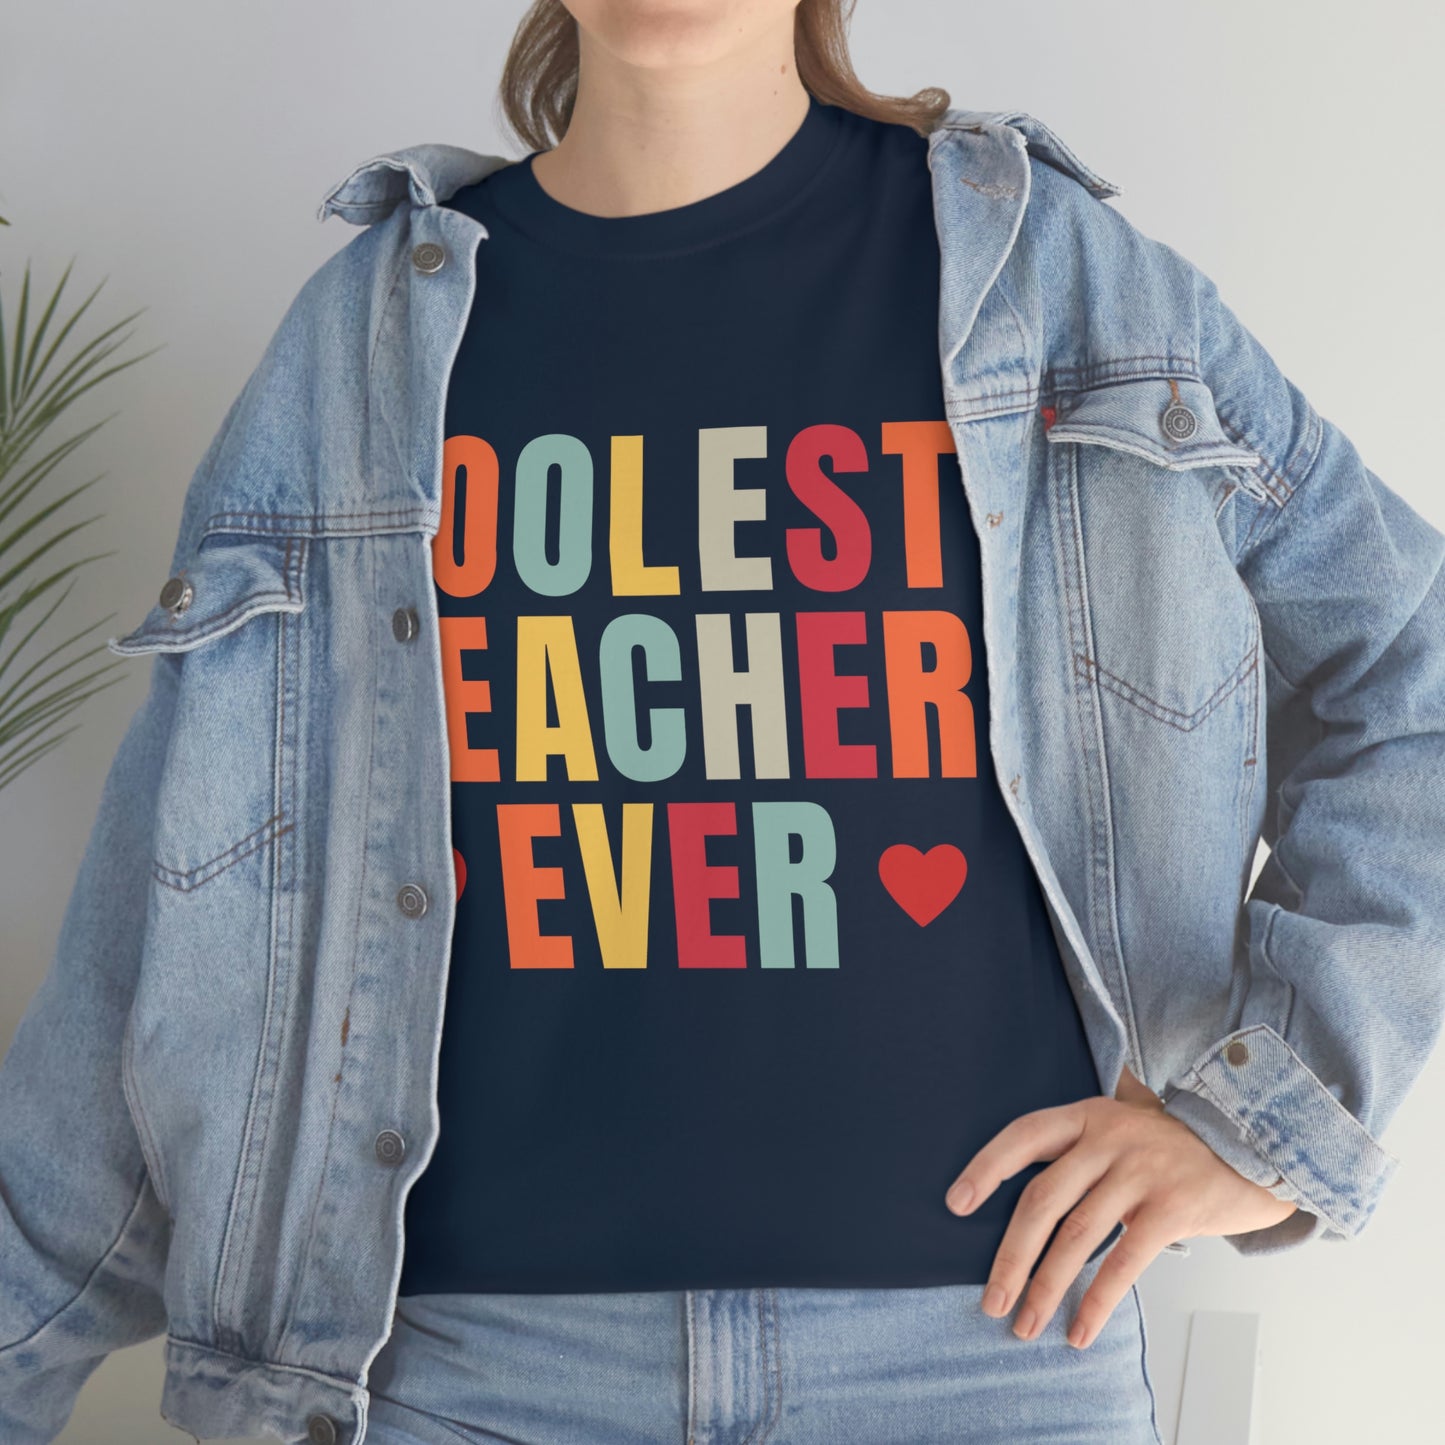 Coolest Teacher Ever T-Shirt - teacher gift - teacher appreciation